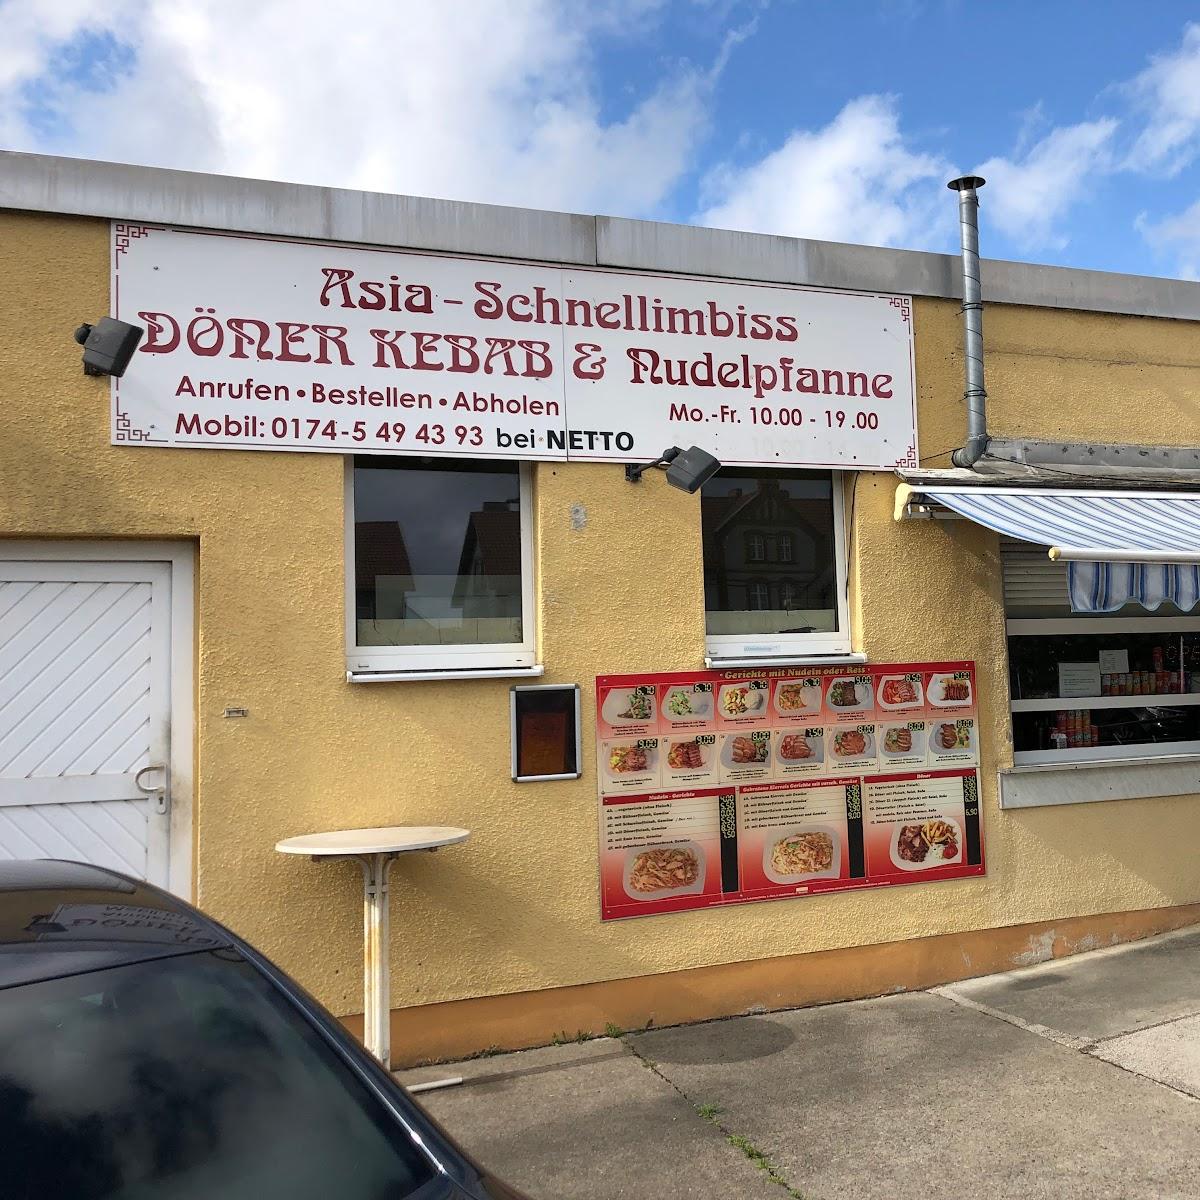 Restaurant "Asia-Schnellimbiss, Döner Kebab & Nudelpfanne" in Angermünde